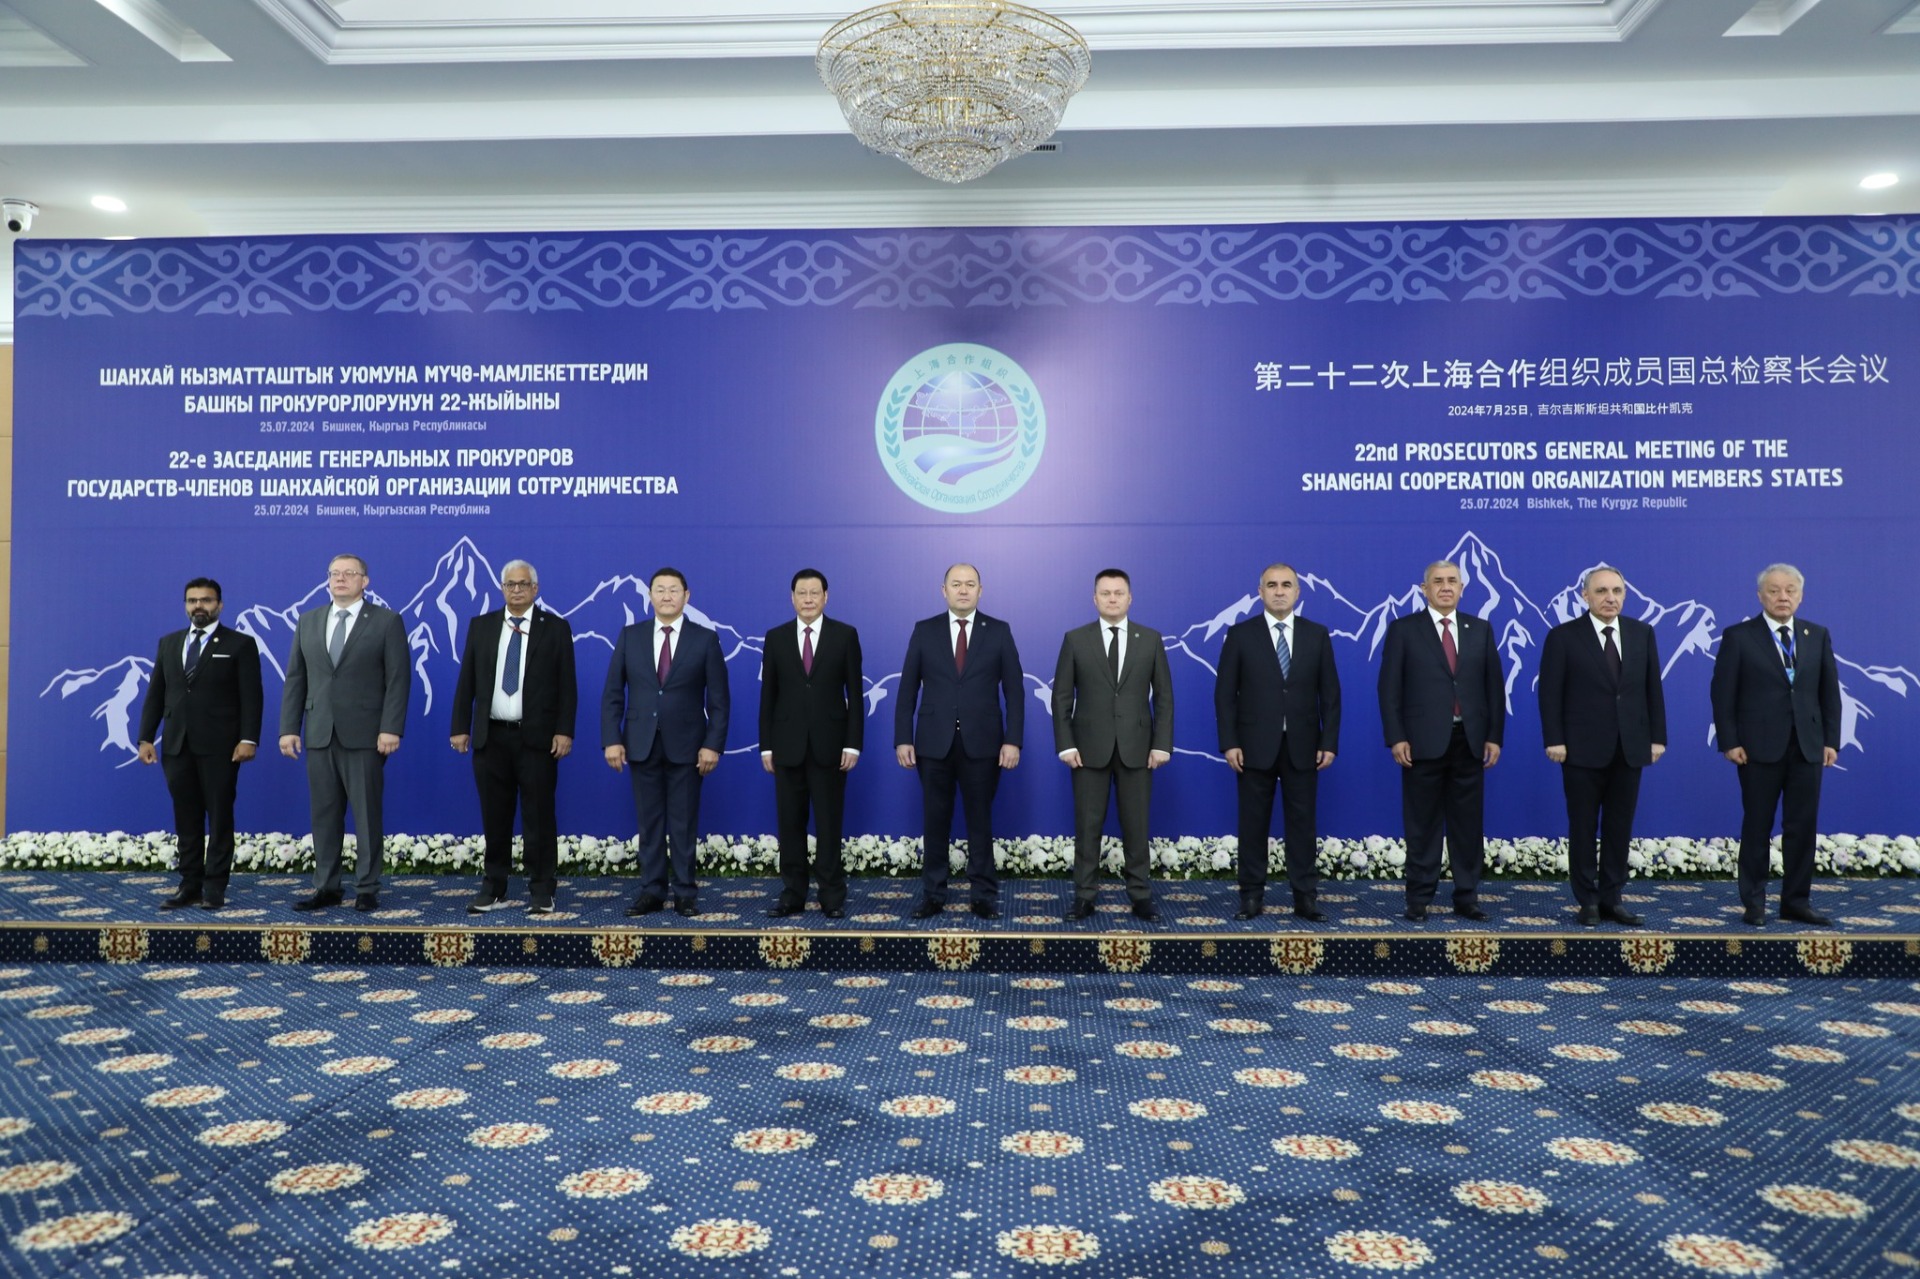 Заседание генпрокуроров стран-членов ШОС состоялось сегодня в Бишкеке